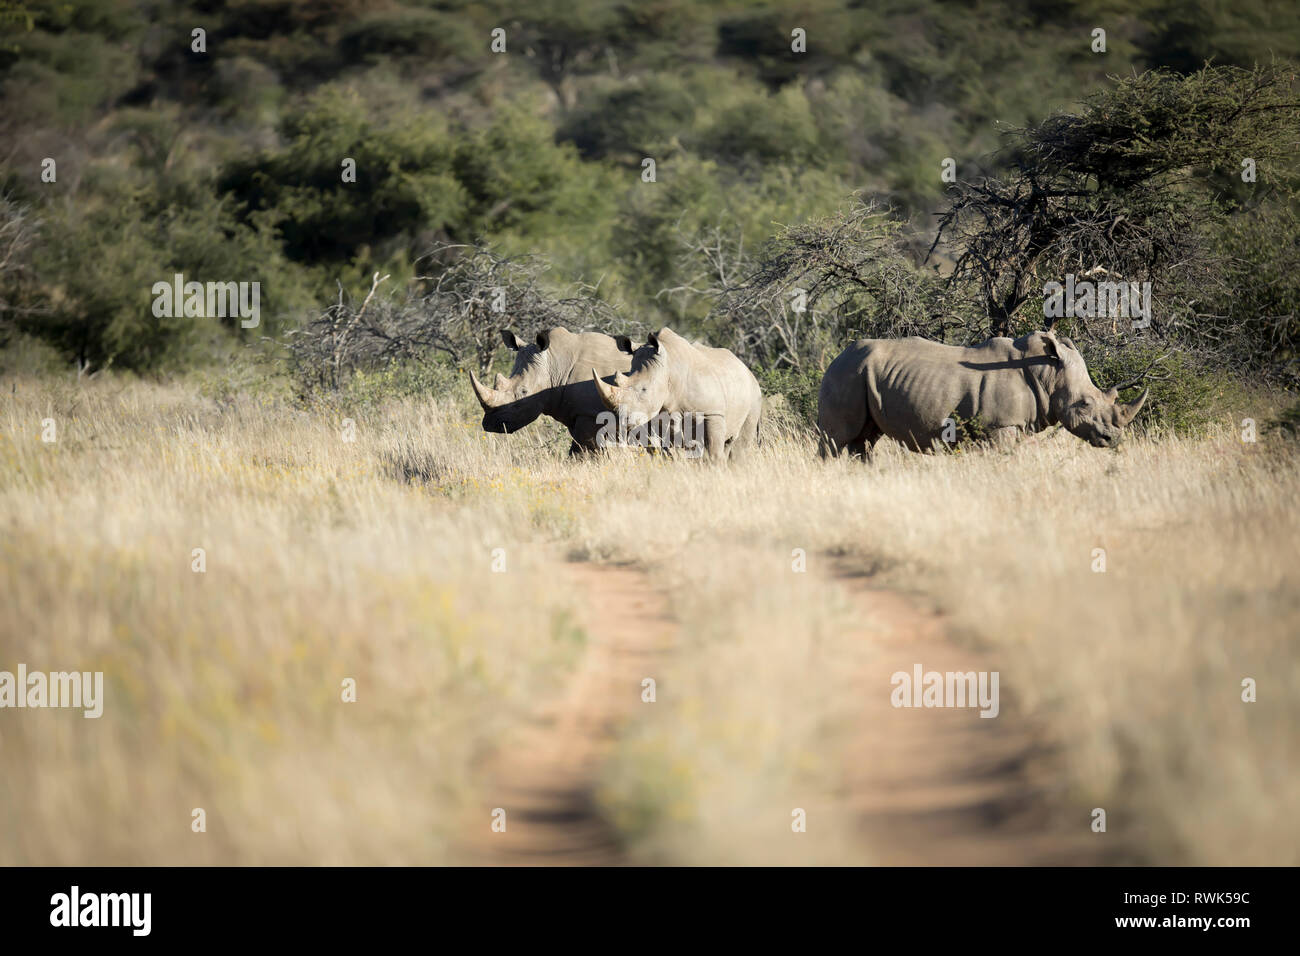 White Rhino in Namibia. Stock Photo